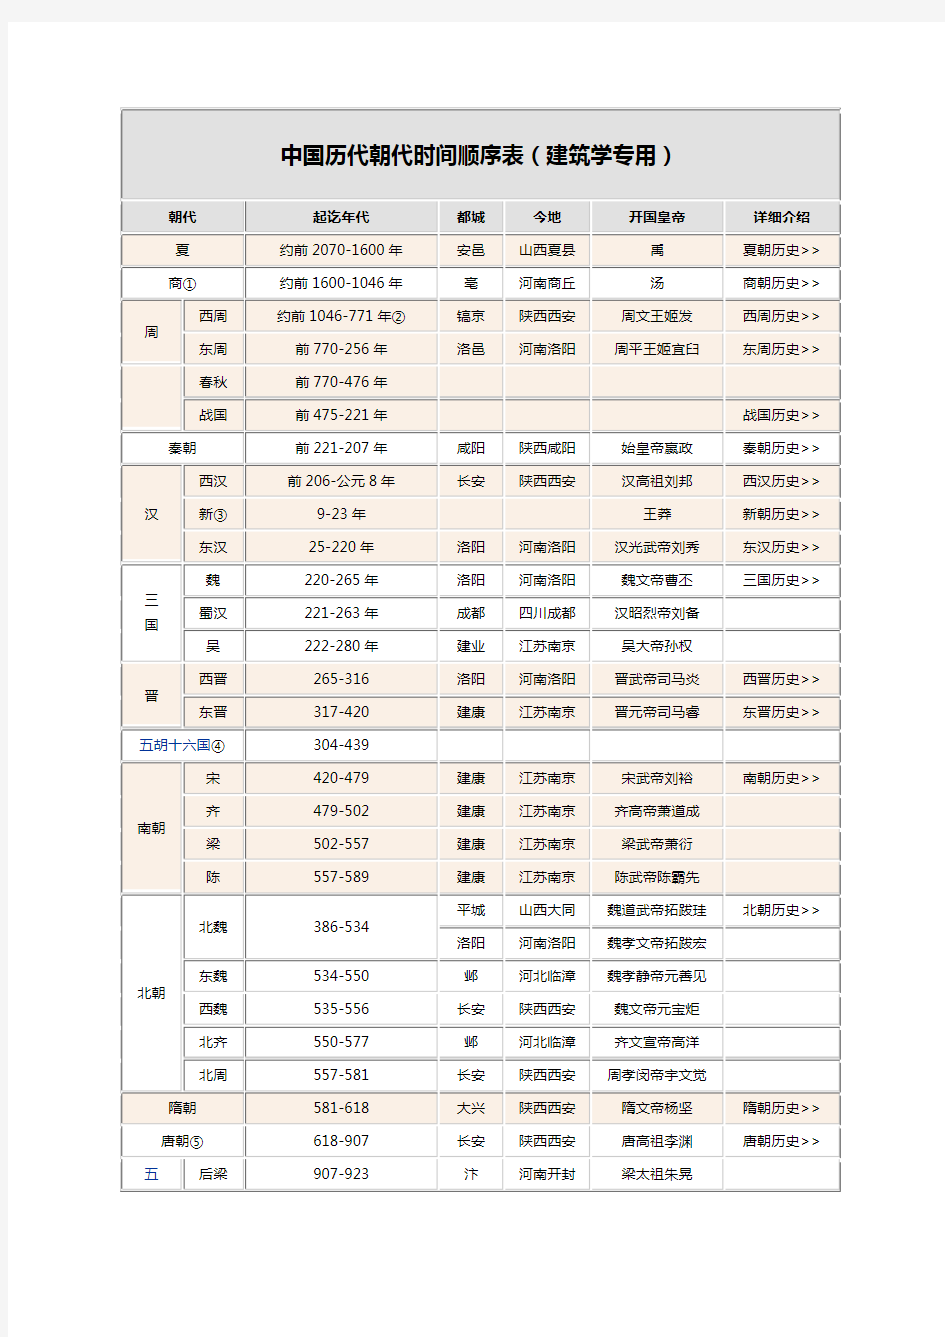 中国历代朝代时间顺序及都城位置详表